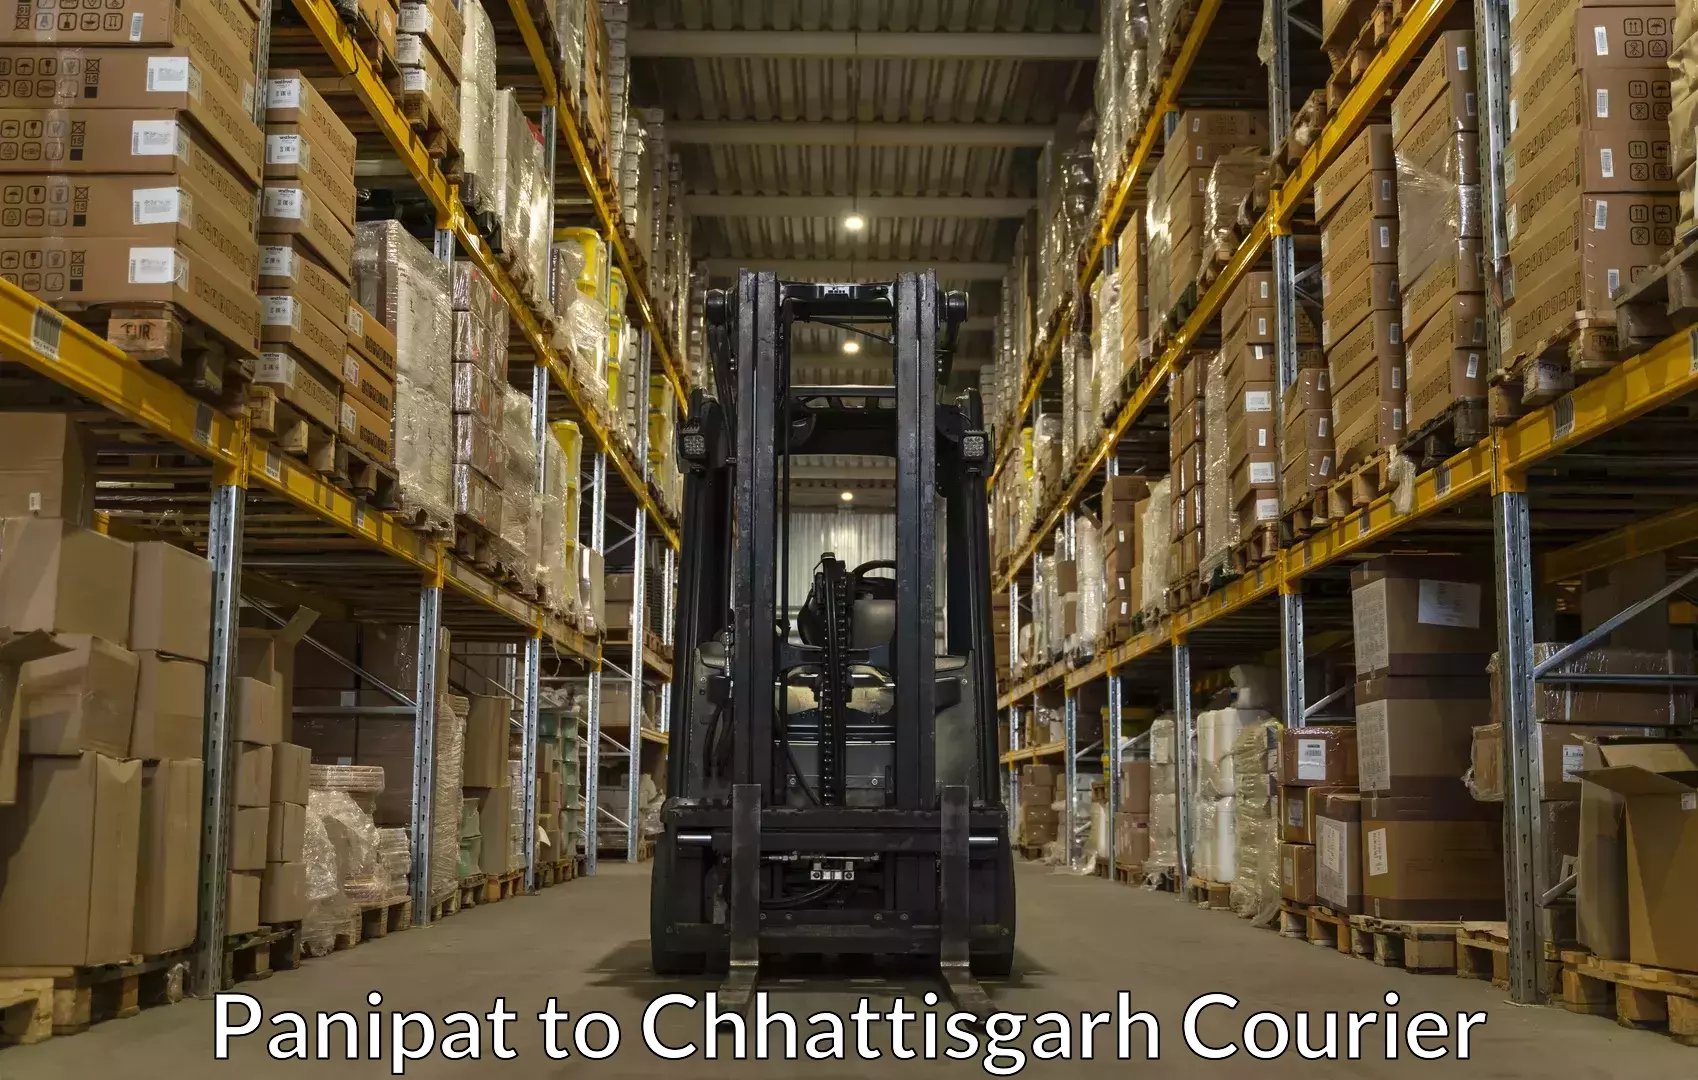 Baggage shipping experts Panipat to Bastar